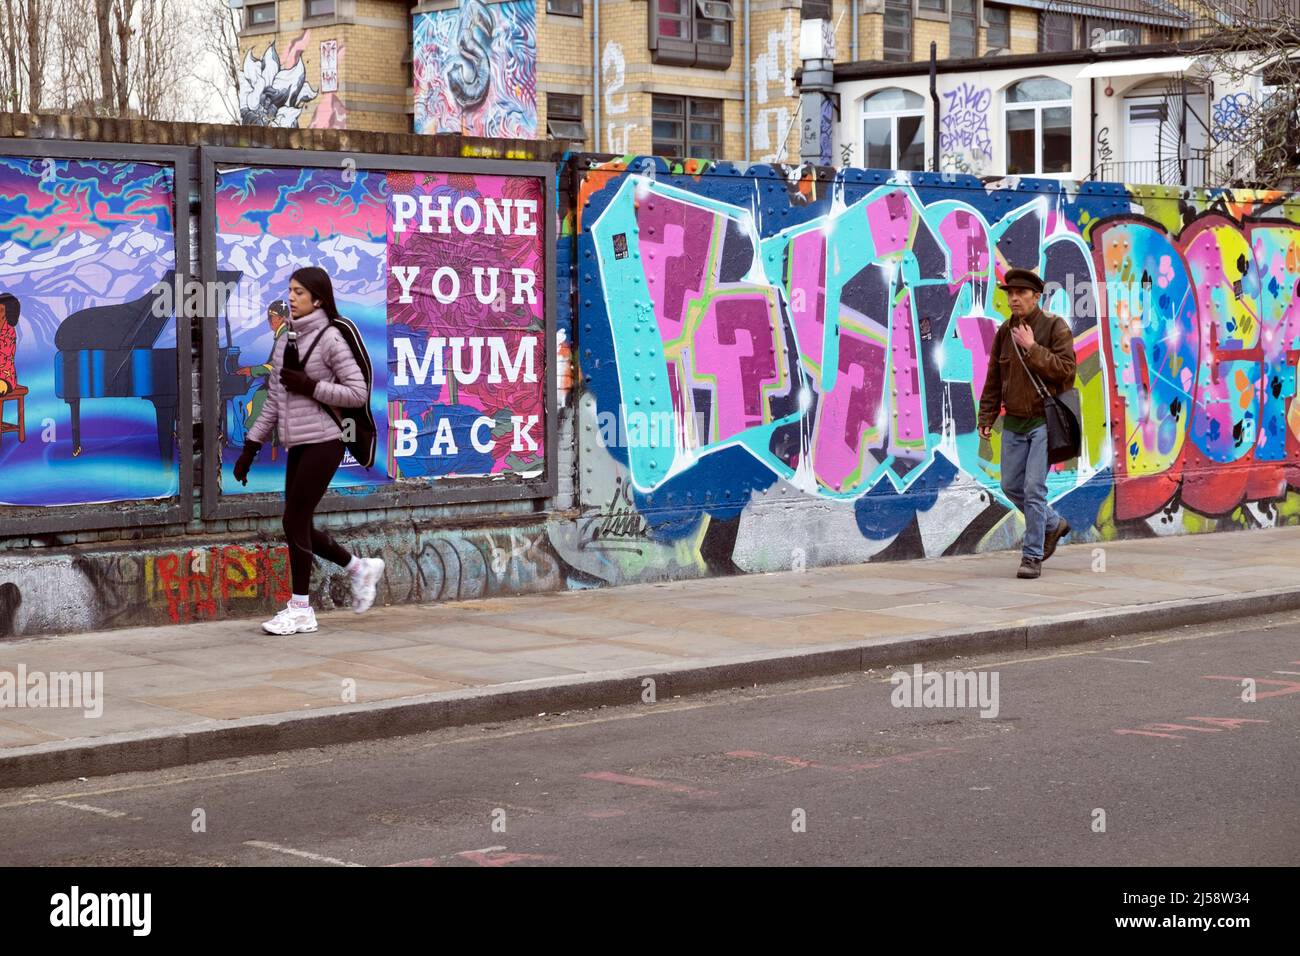 Personnes personne marchant par graffiti coloré peinture sur des parures à Brick Lane Shoreditch printemps 2022 avril Londres Angleterre Royaume-Uni KATHY DEWITT Banque D'Images